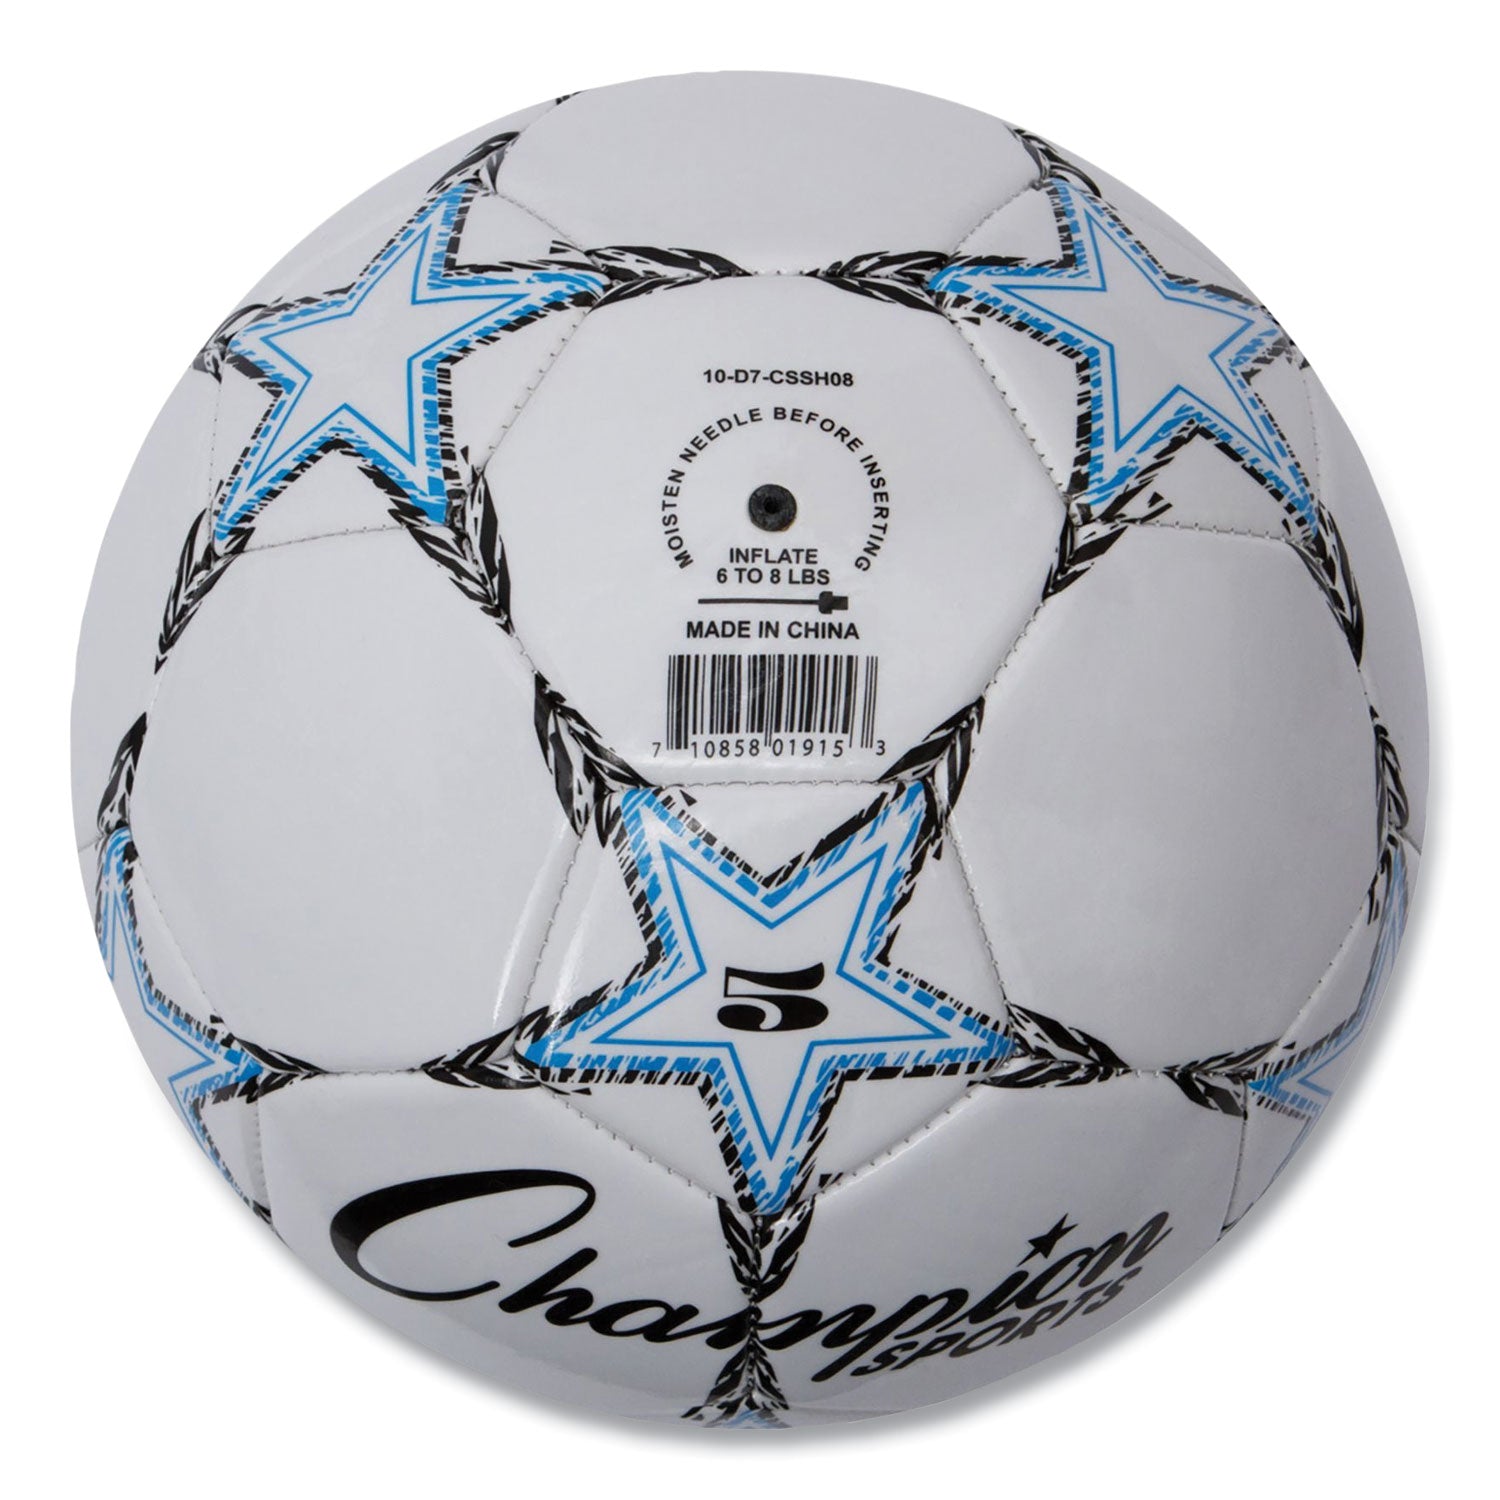 VIPER Soccer Ball, No. 5. Size, 8.5" to 9" Diameter, White - 